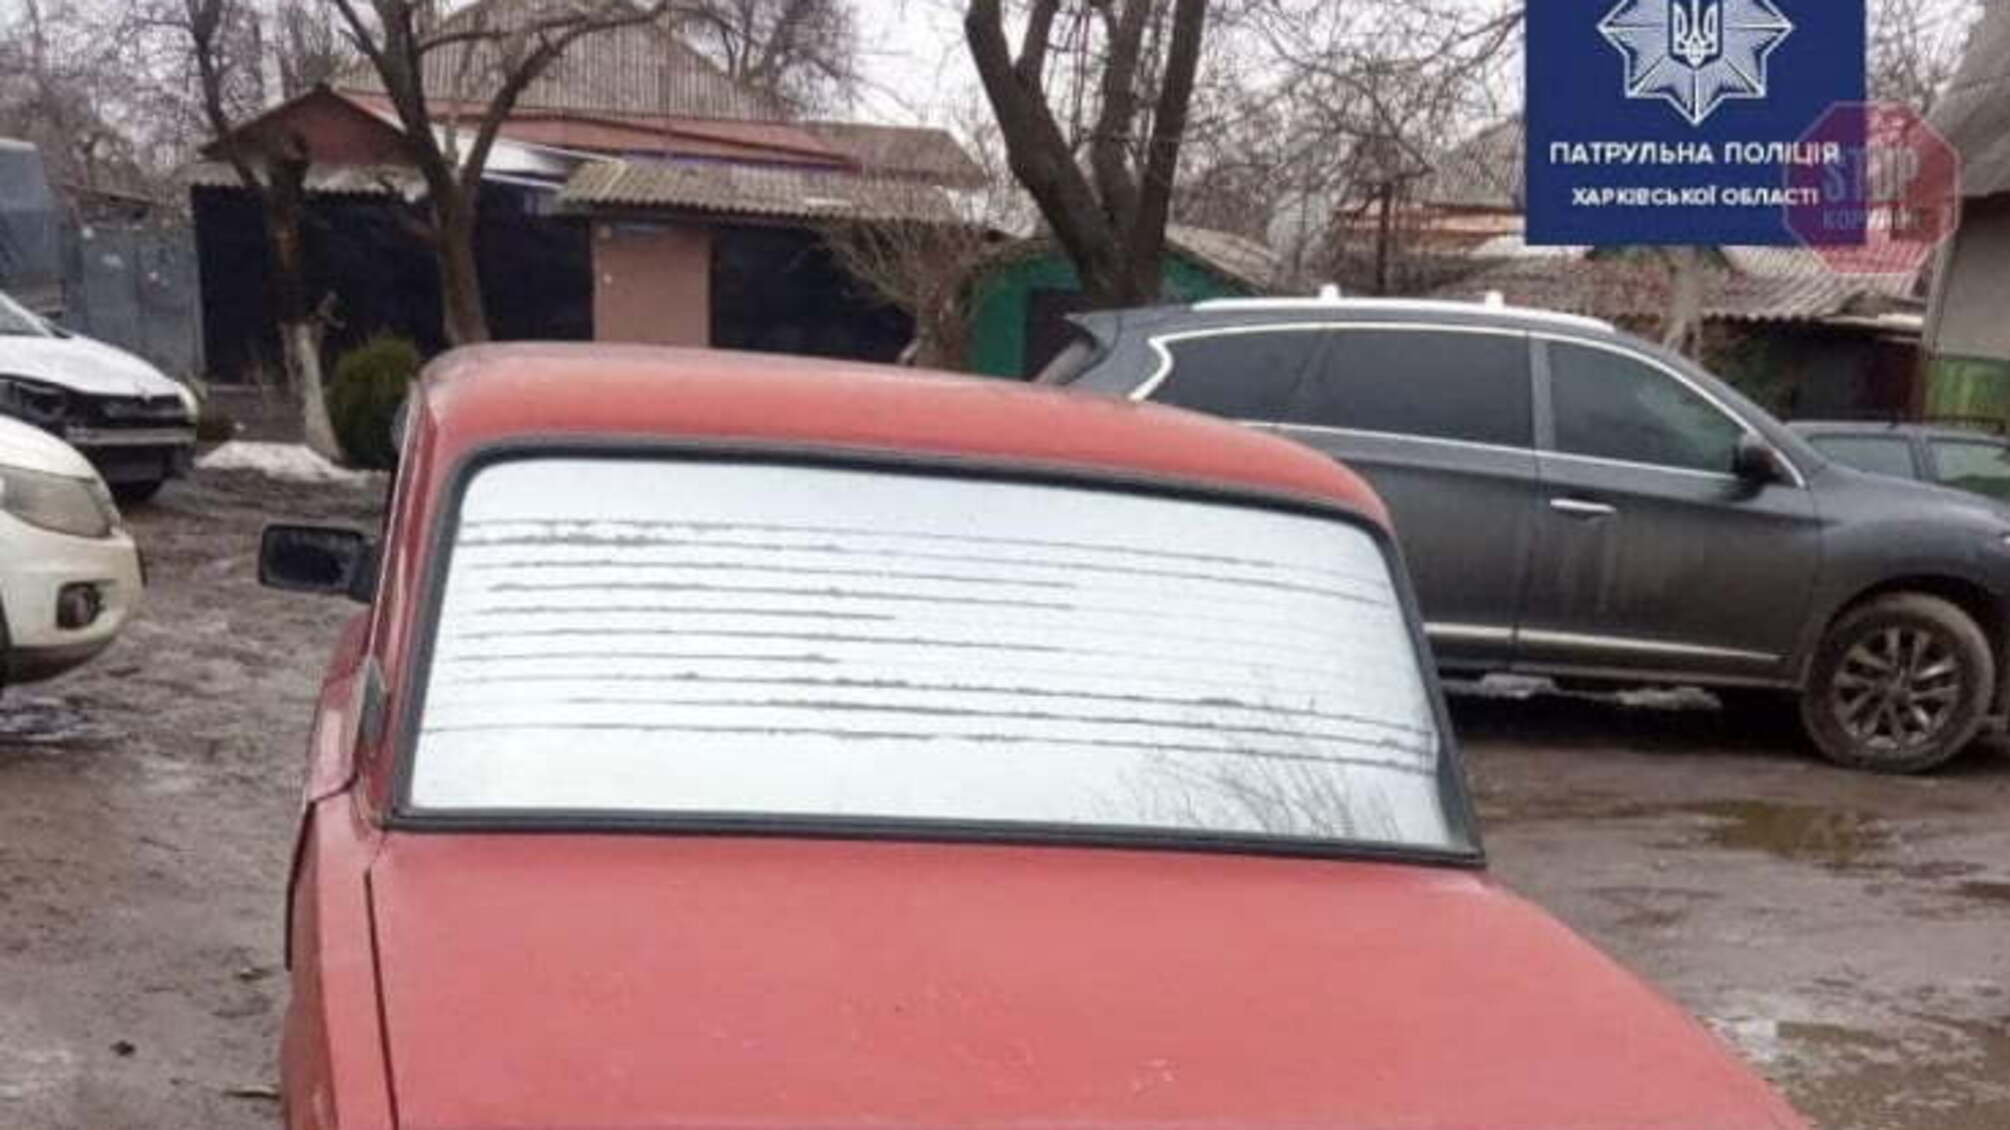 Новини Харкова: Поліція затримала п'яного водія, який намагався дати хабар (фото)